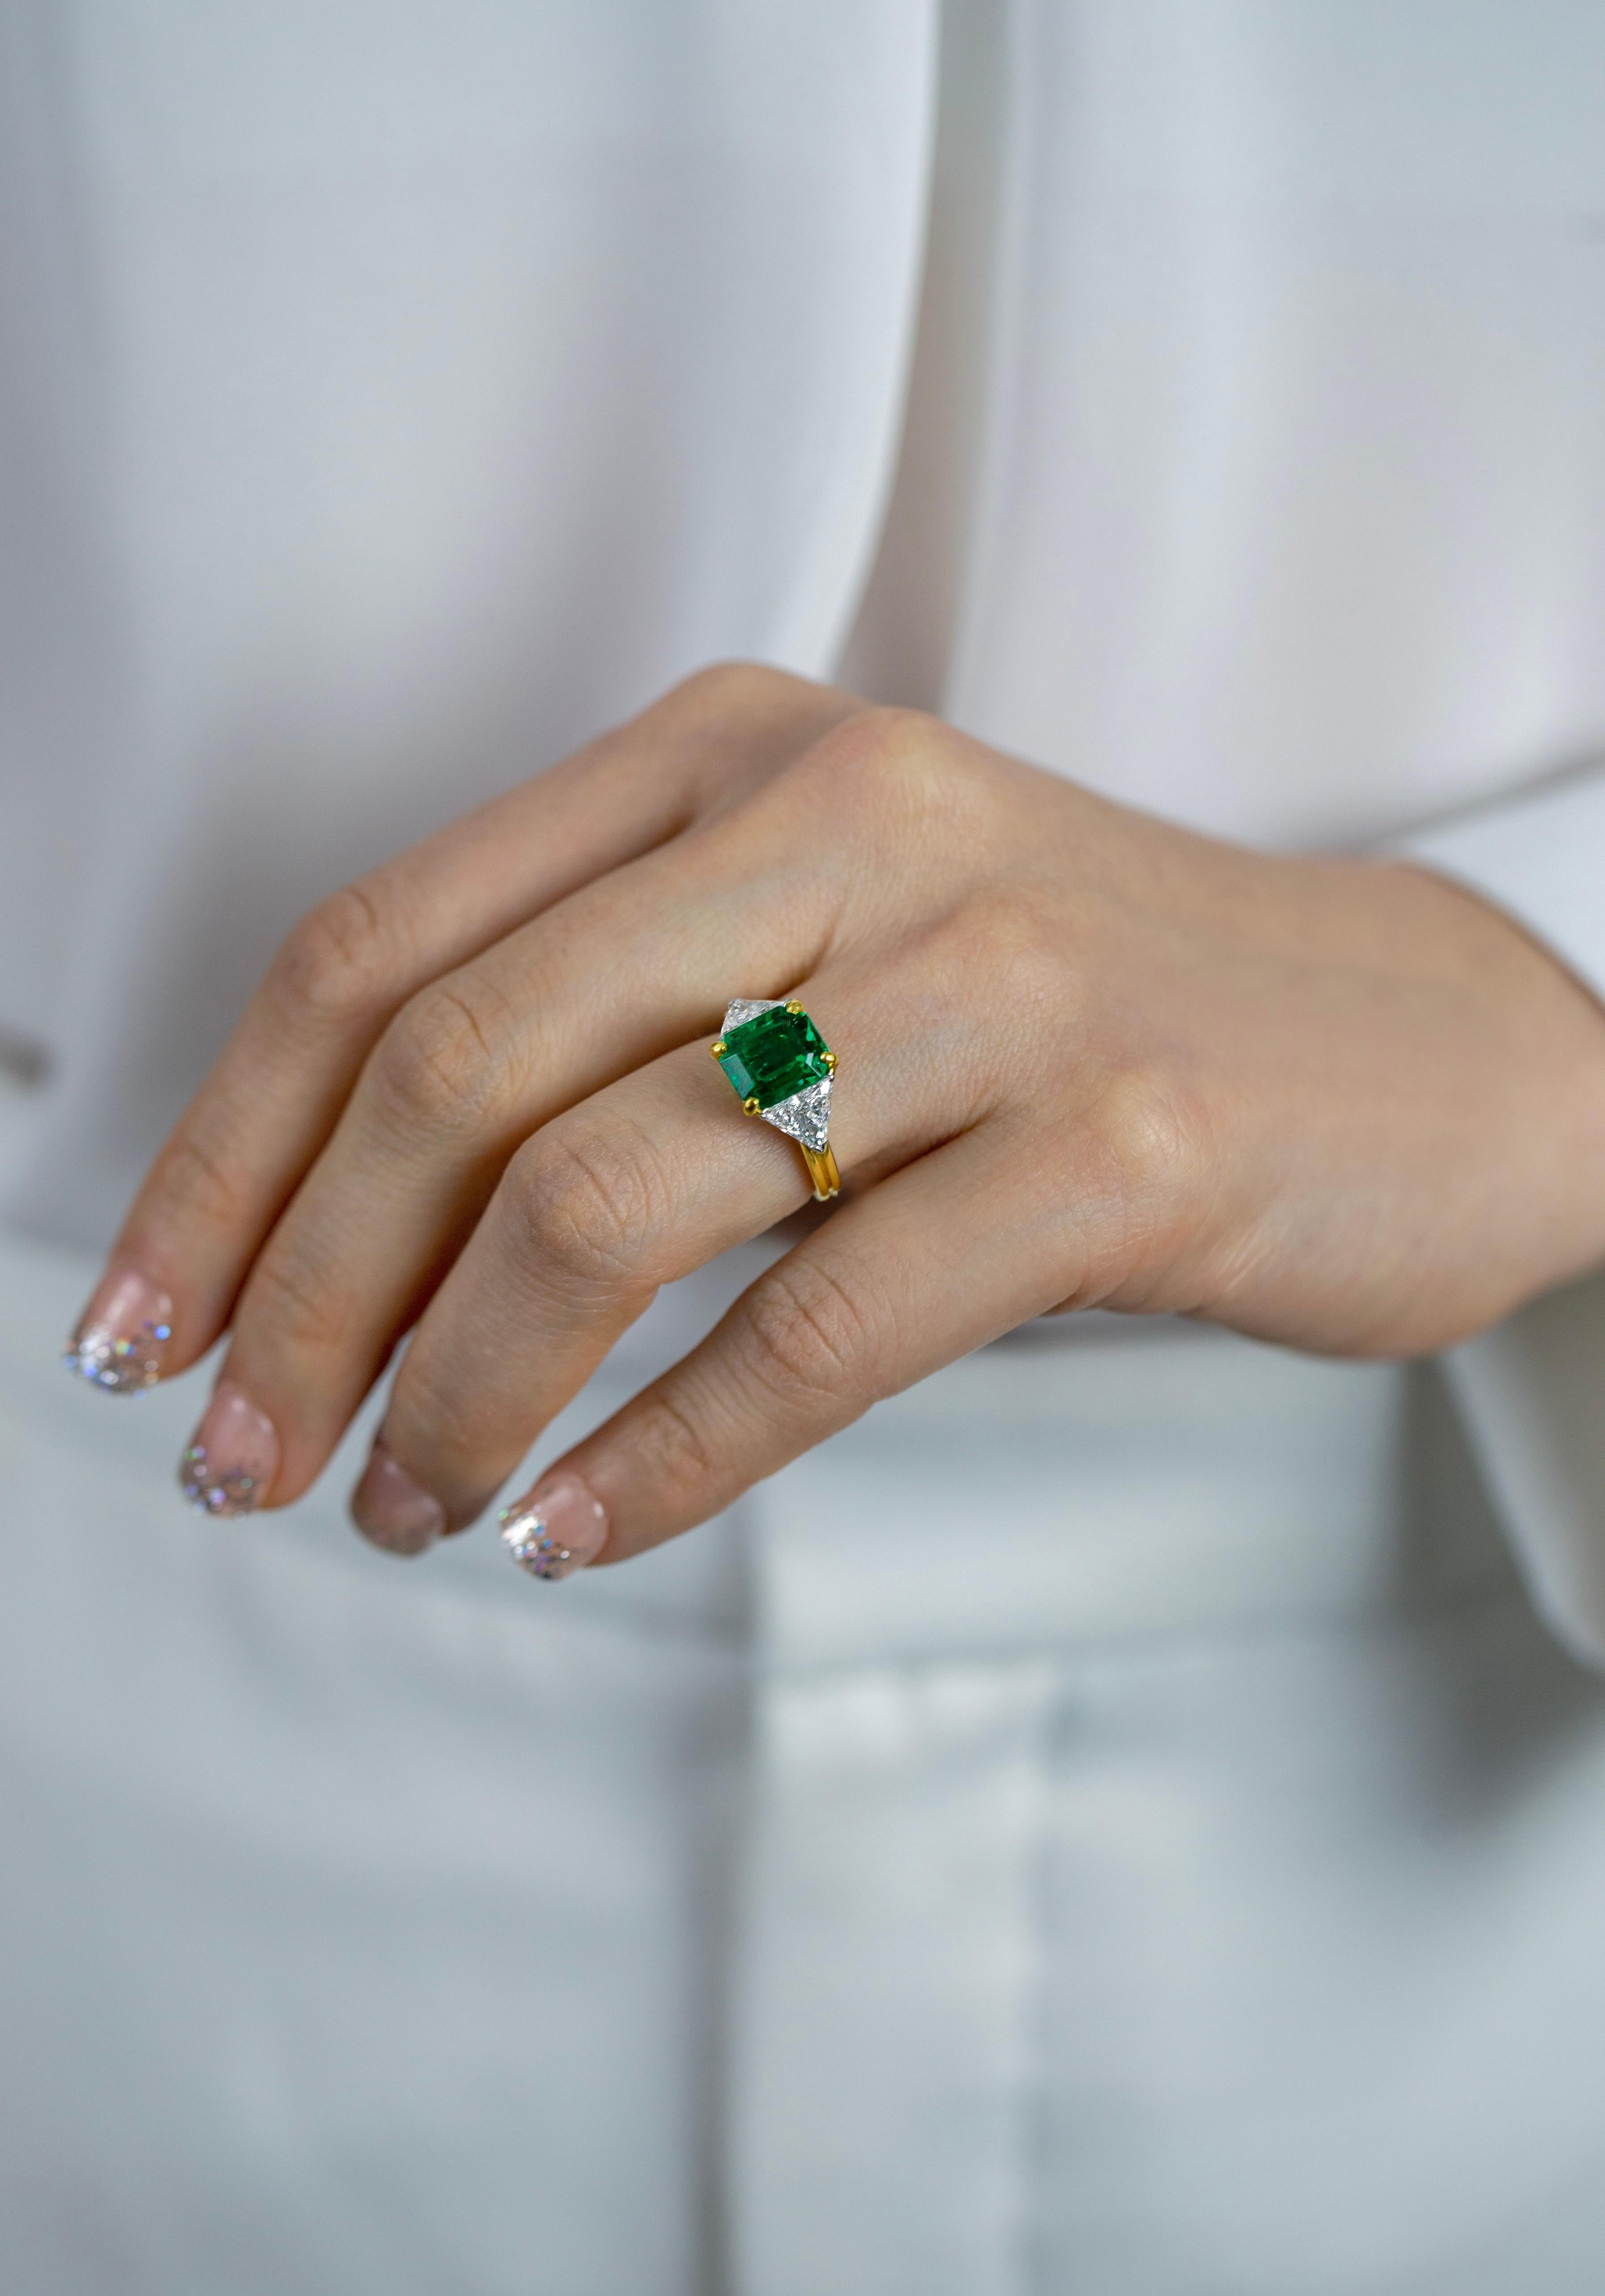 Women's Oscar Heyman 2.91 Carat Emerald Cut Green Emerald Three Stone Ring For Sale